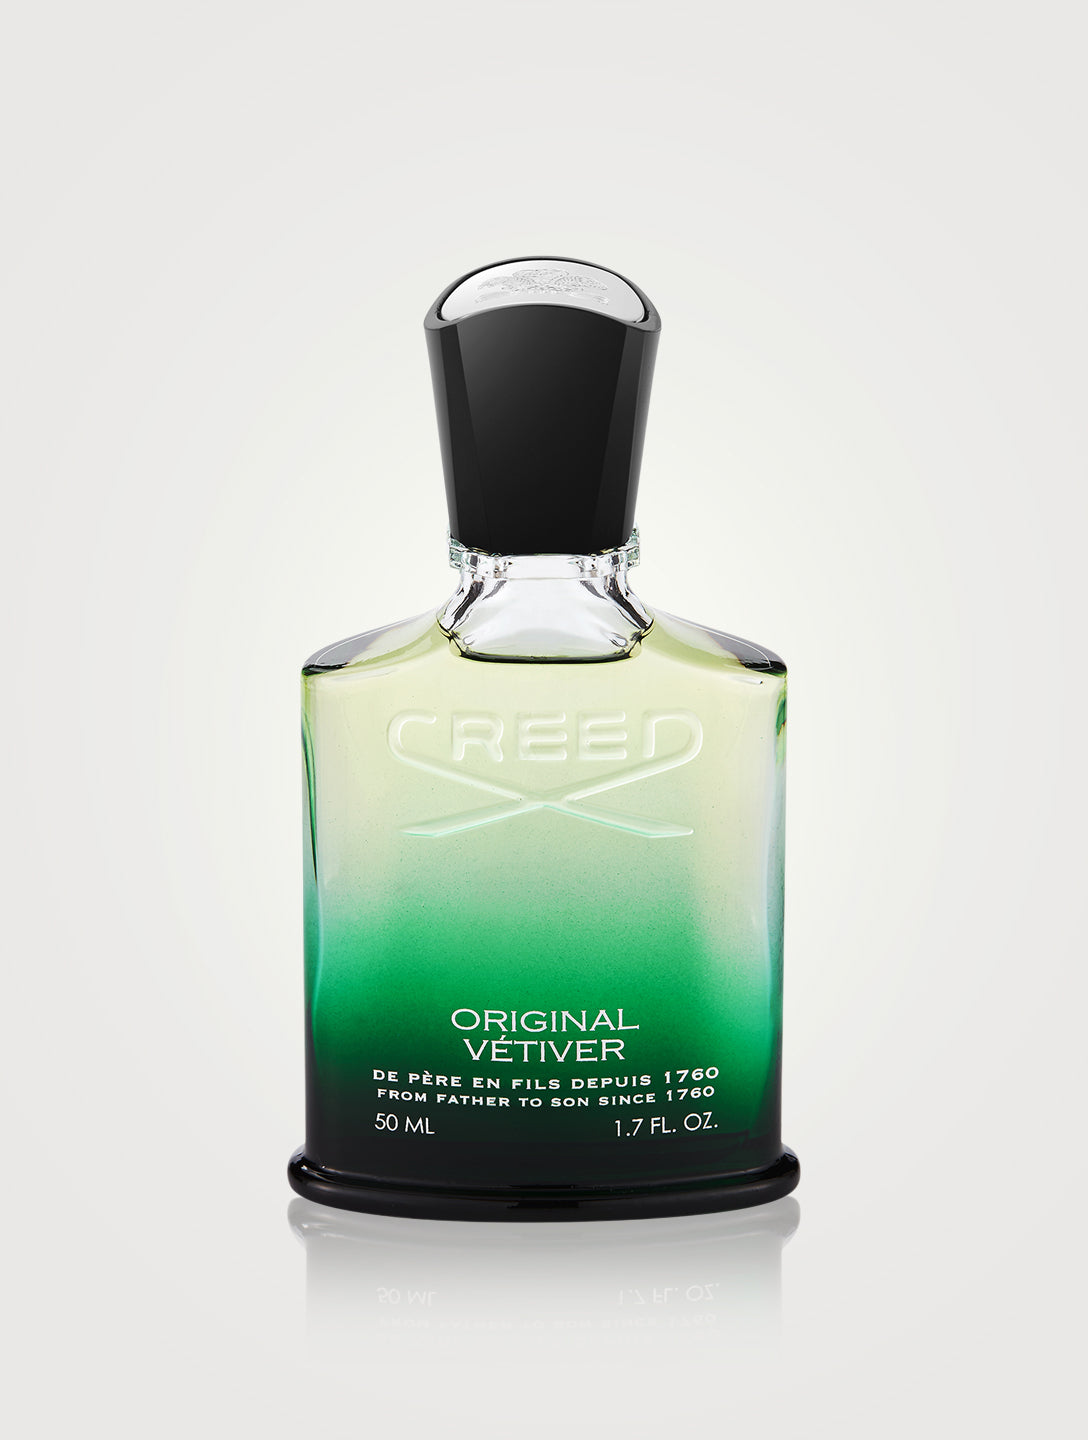 Creed - Original Vetiver Eau De Parfum 100ML